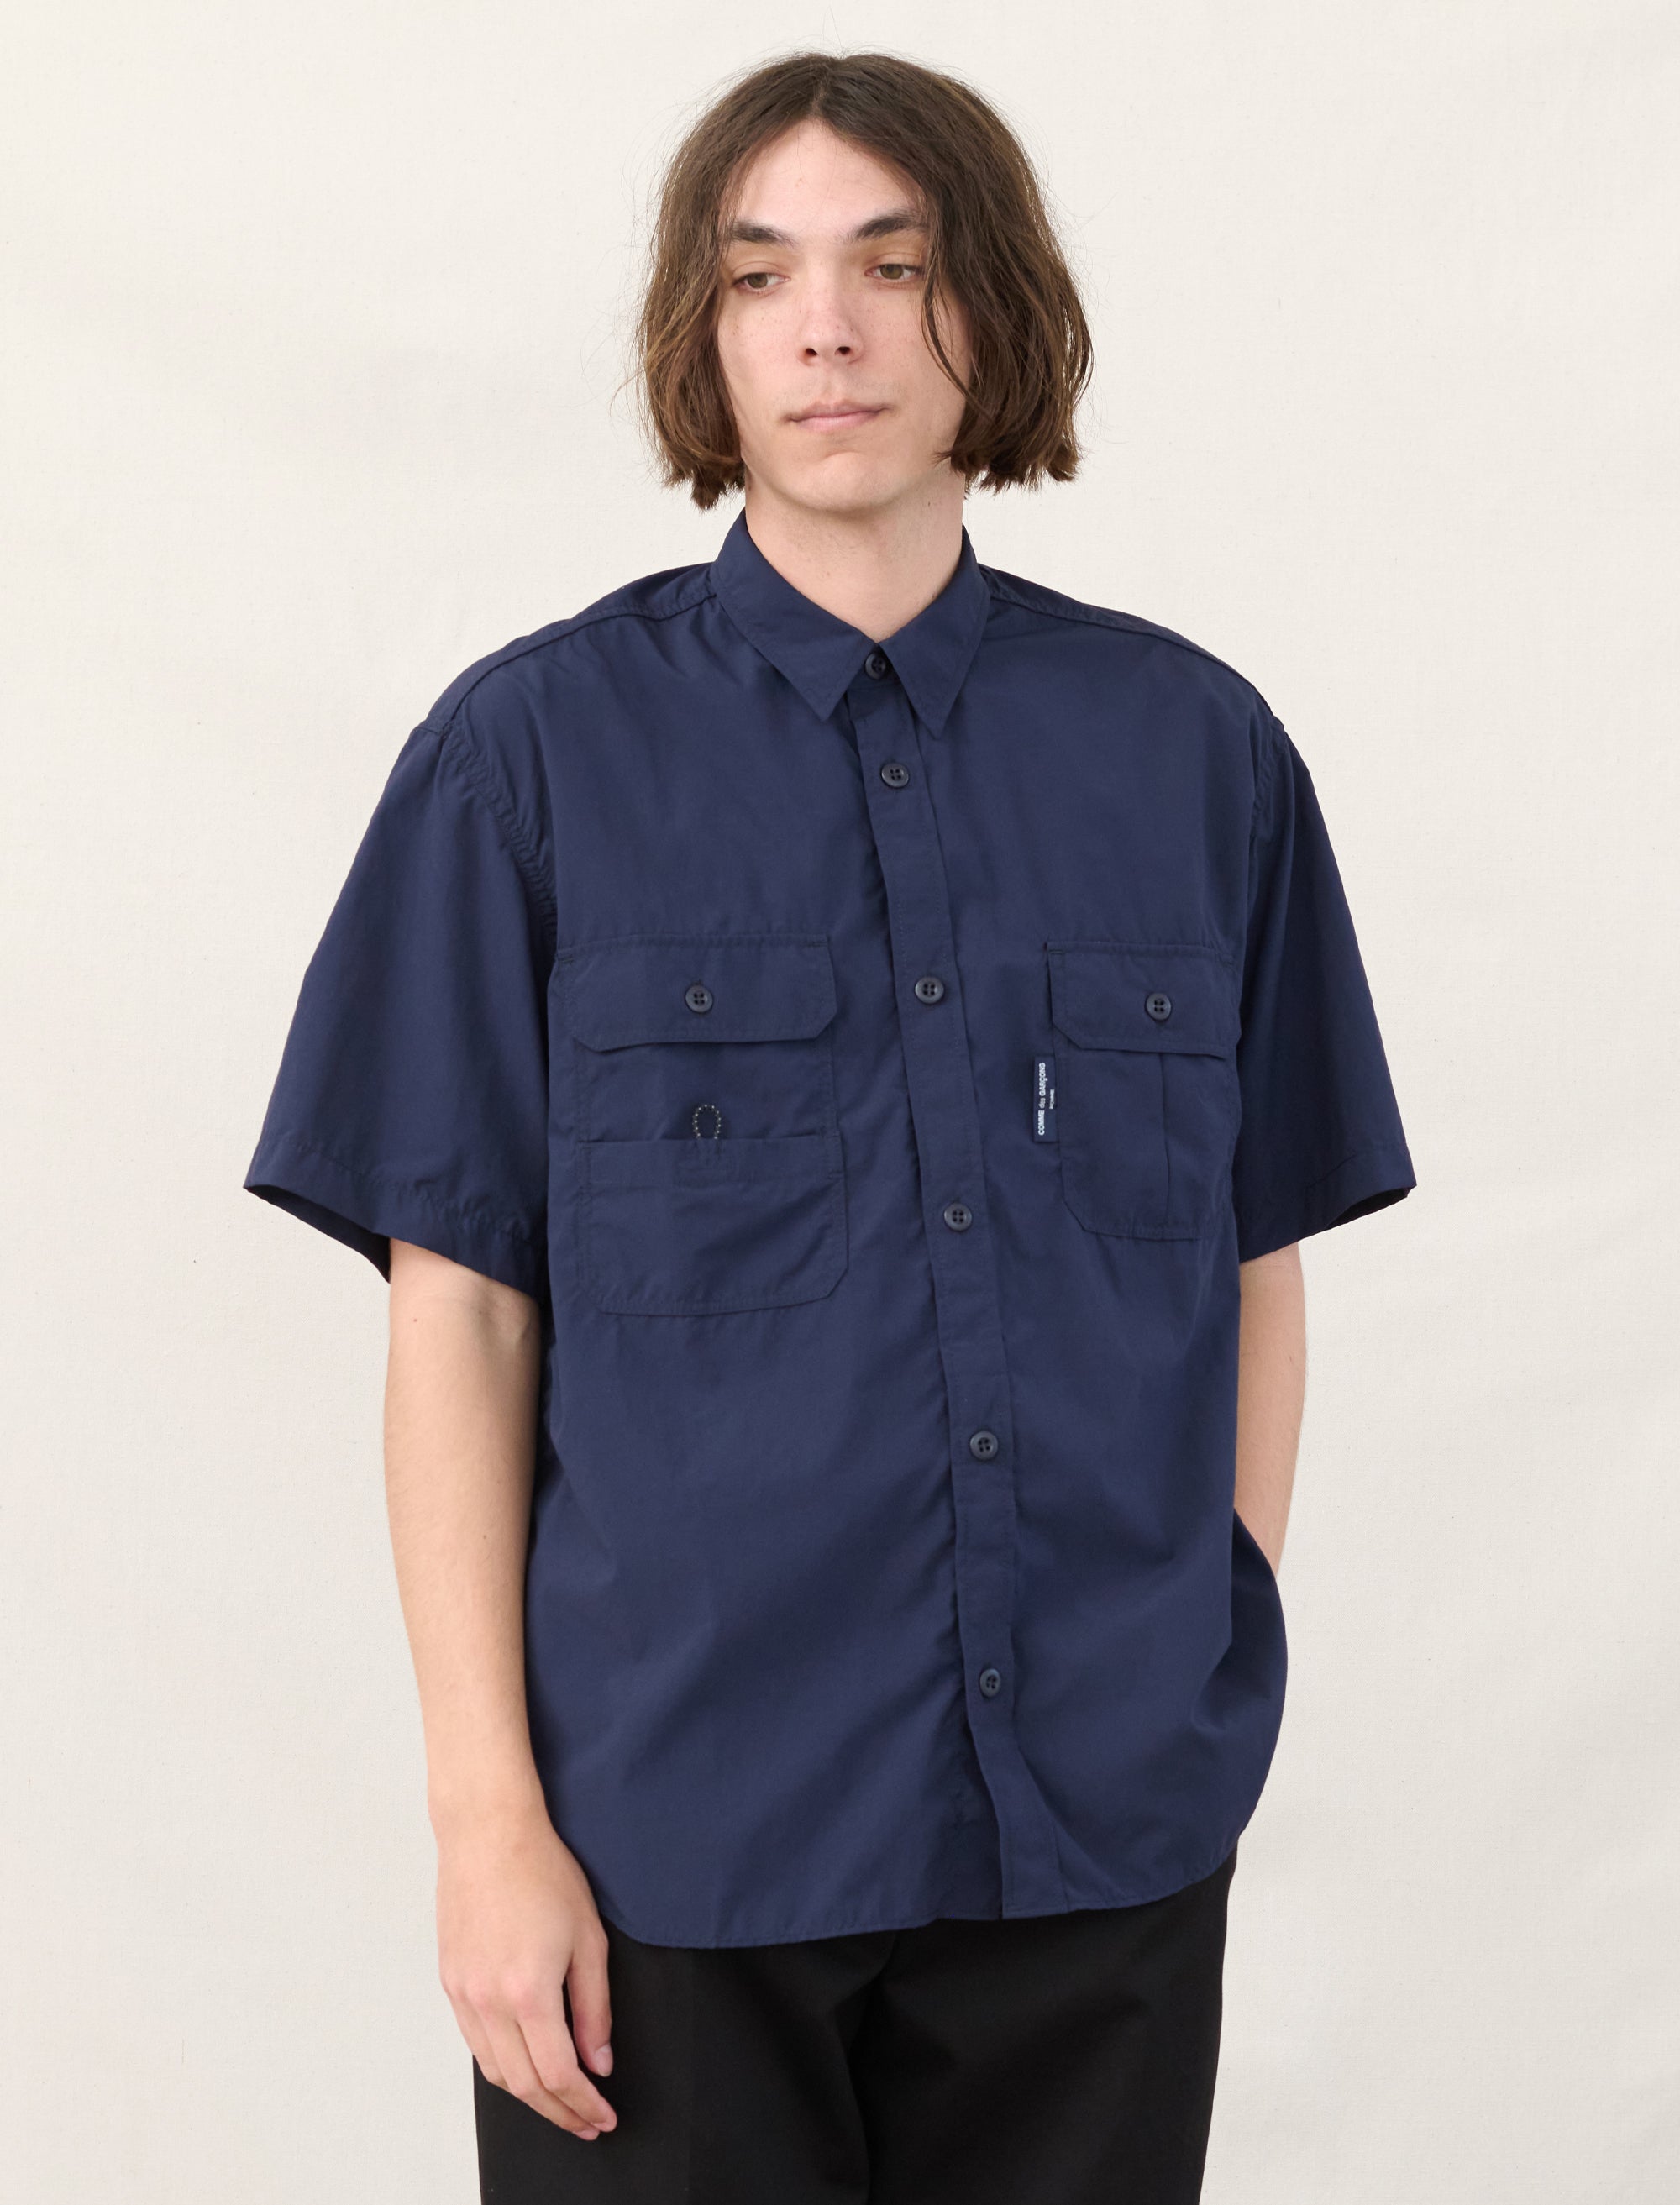 Nylon Shirt (Navy)